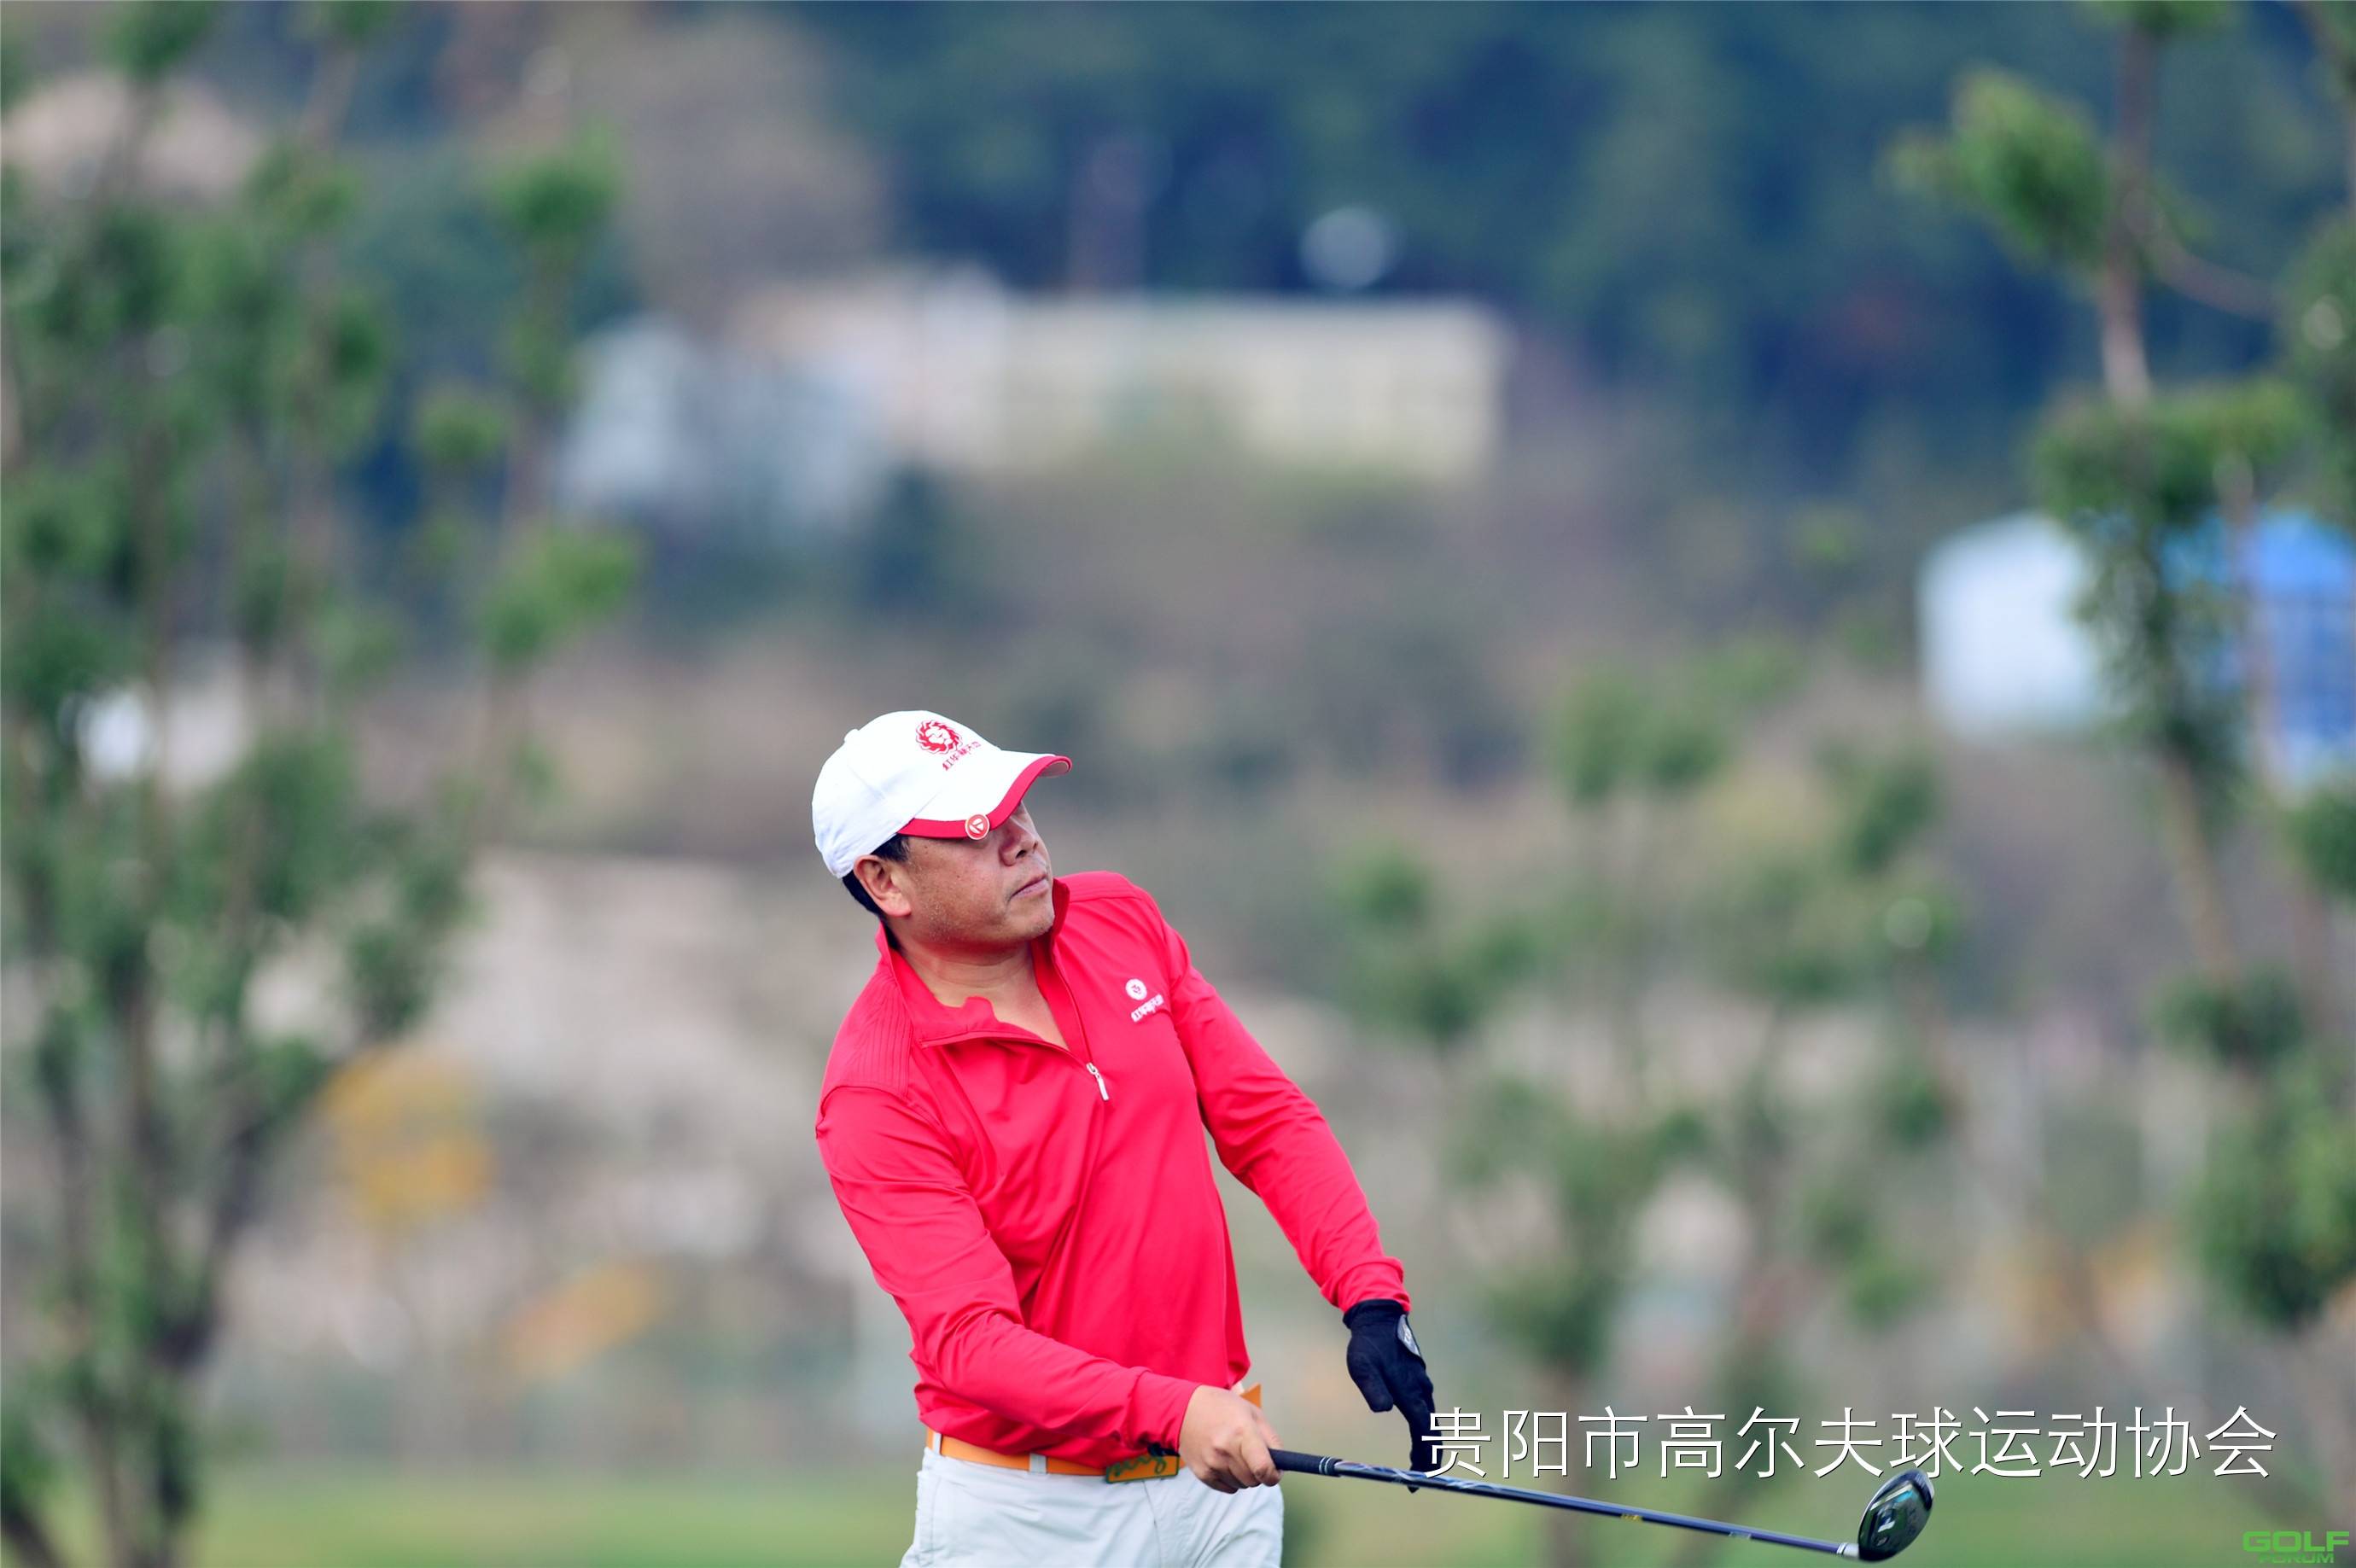 2014红华杯·贵州业余高尔夫锦标赛球员风采第五组石邦华谭亚 ...